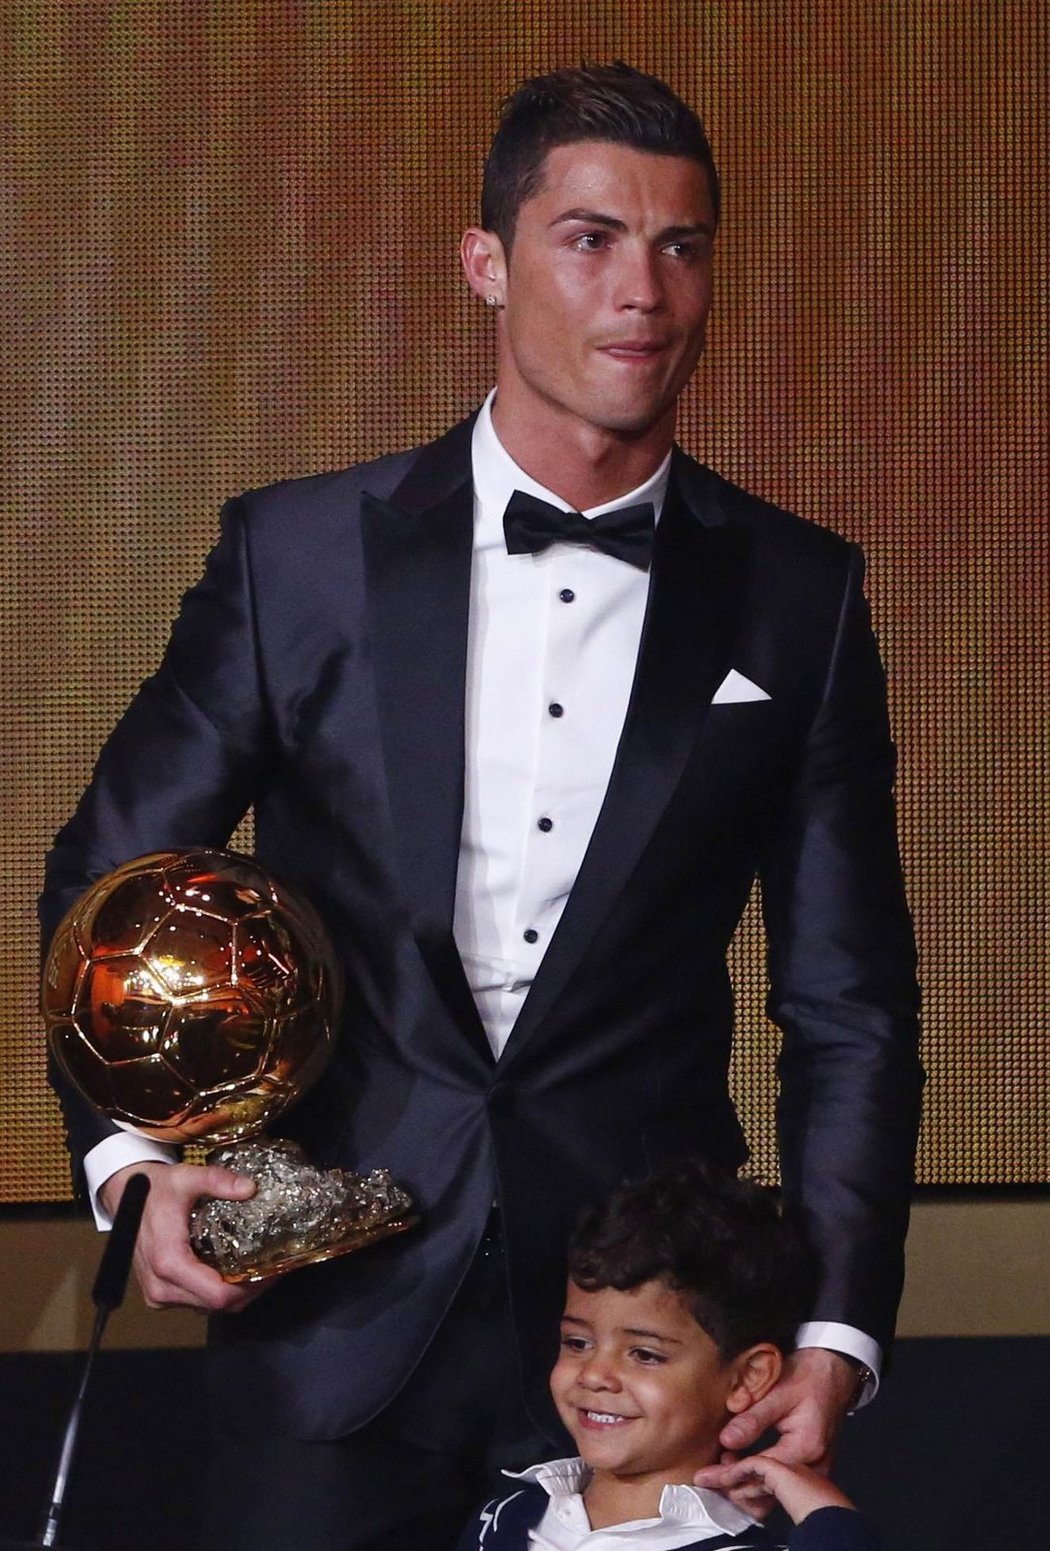 Cristiano Ronaldo a dvě nejcennější části jeho života: malý syn... a také Zlatý míč!